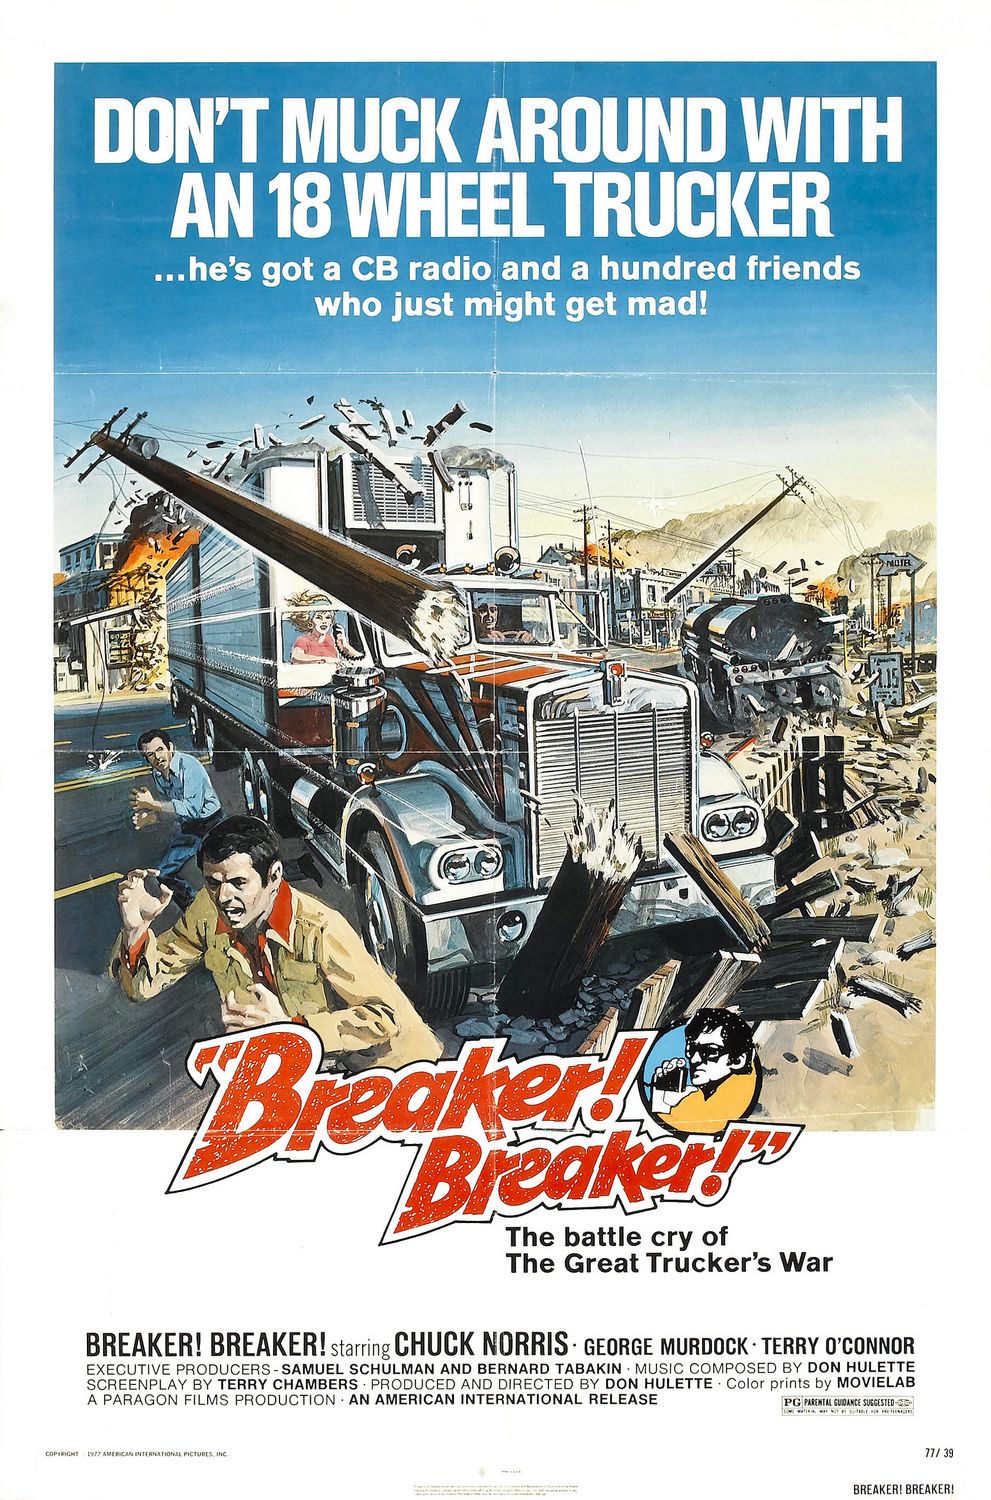 Extra Large Movie Poster Image for Breaker! Breaker! 